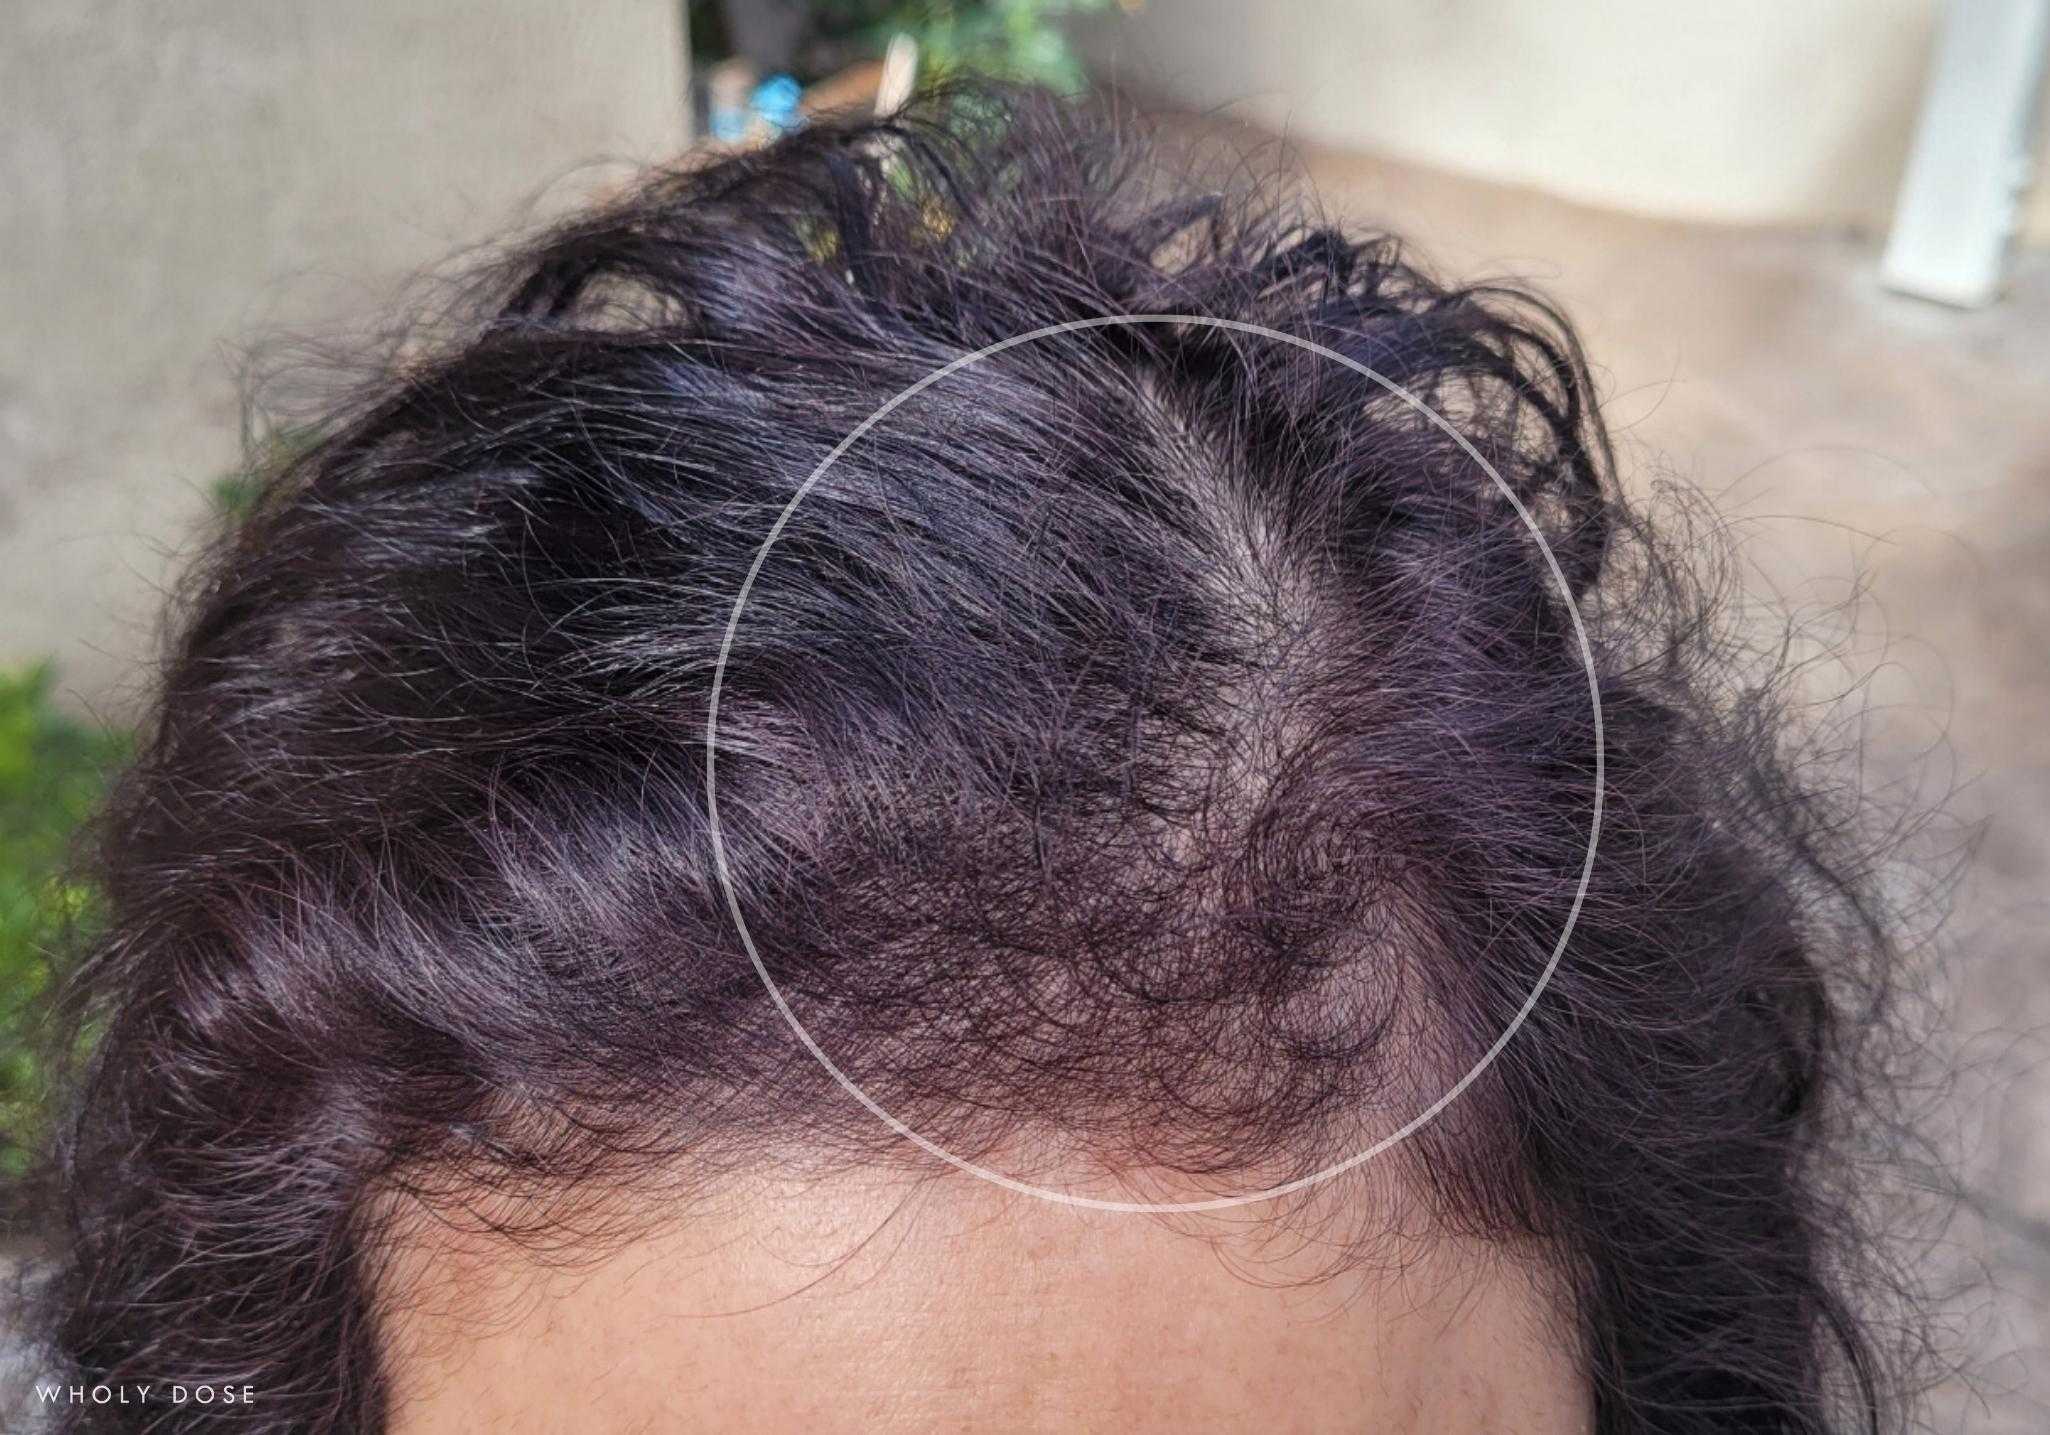 VedoMax Maximum Hair Vitamins, Hair Growth, Volume, Faster, Effective  Result, Reduces Hair fall with DHT Blocker, Biotin, Magical Hair Vitamin  Tablets, Hair max hair vitamins